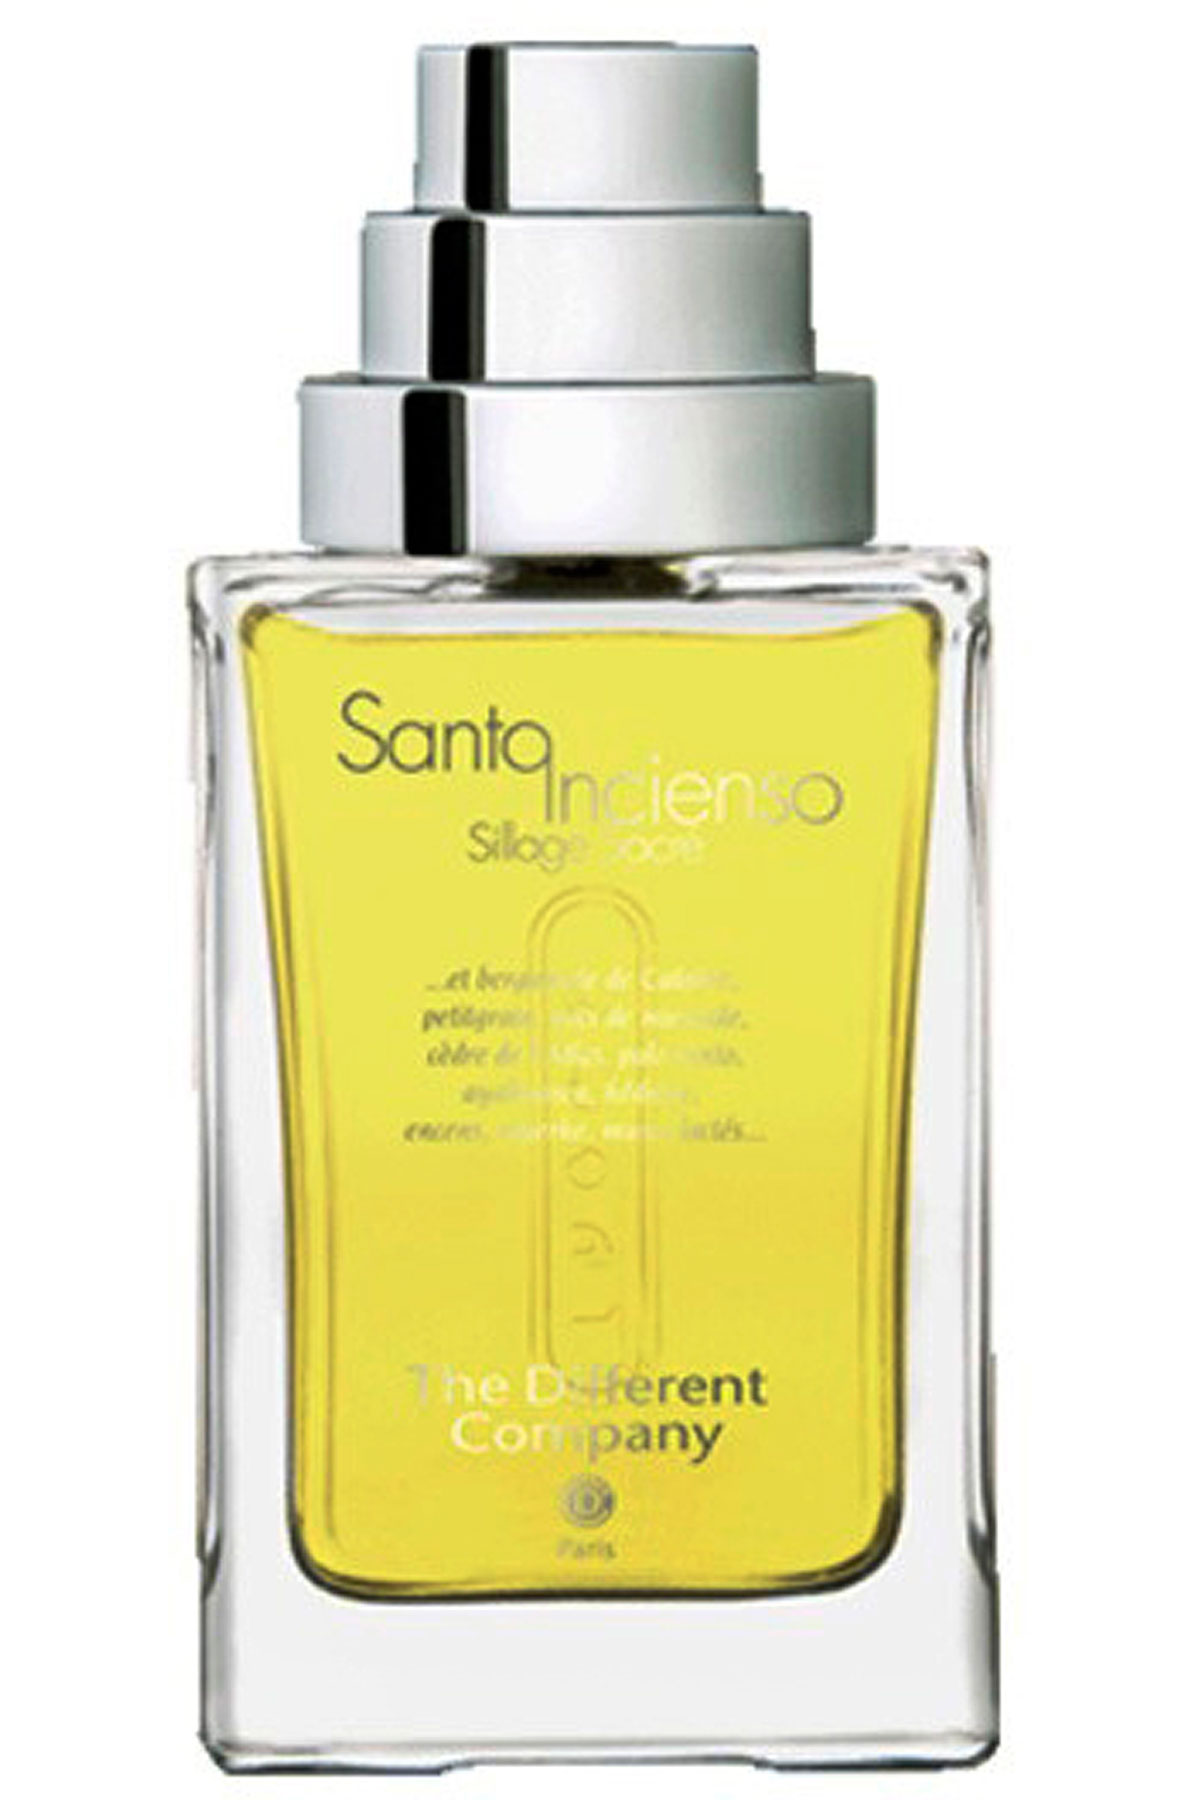 SANTO INCIENSO - EAU DE PARFUM - 100 ML, Mens Fragrances The Different